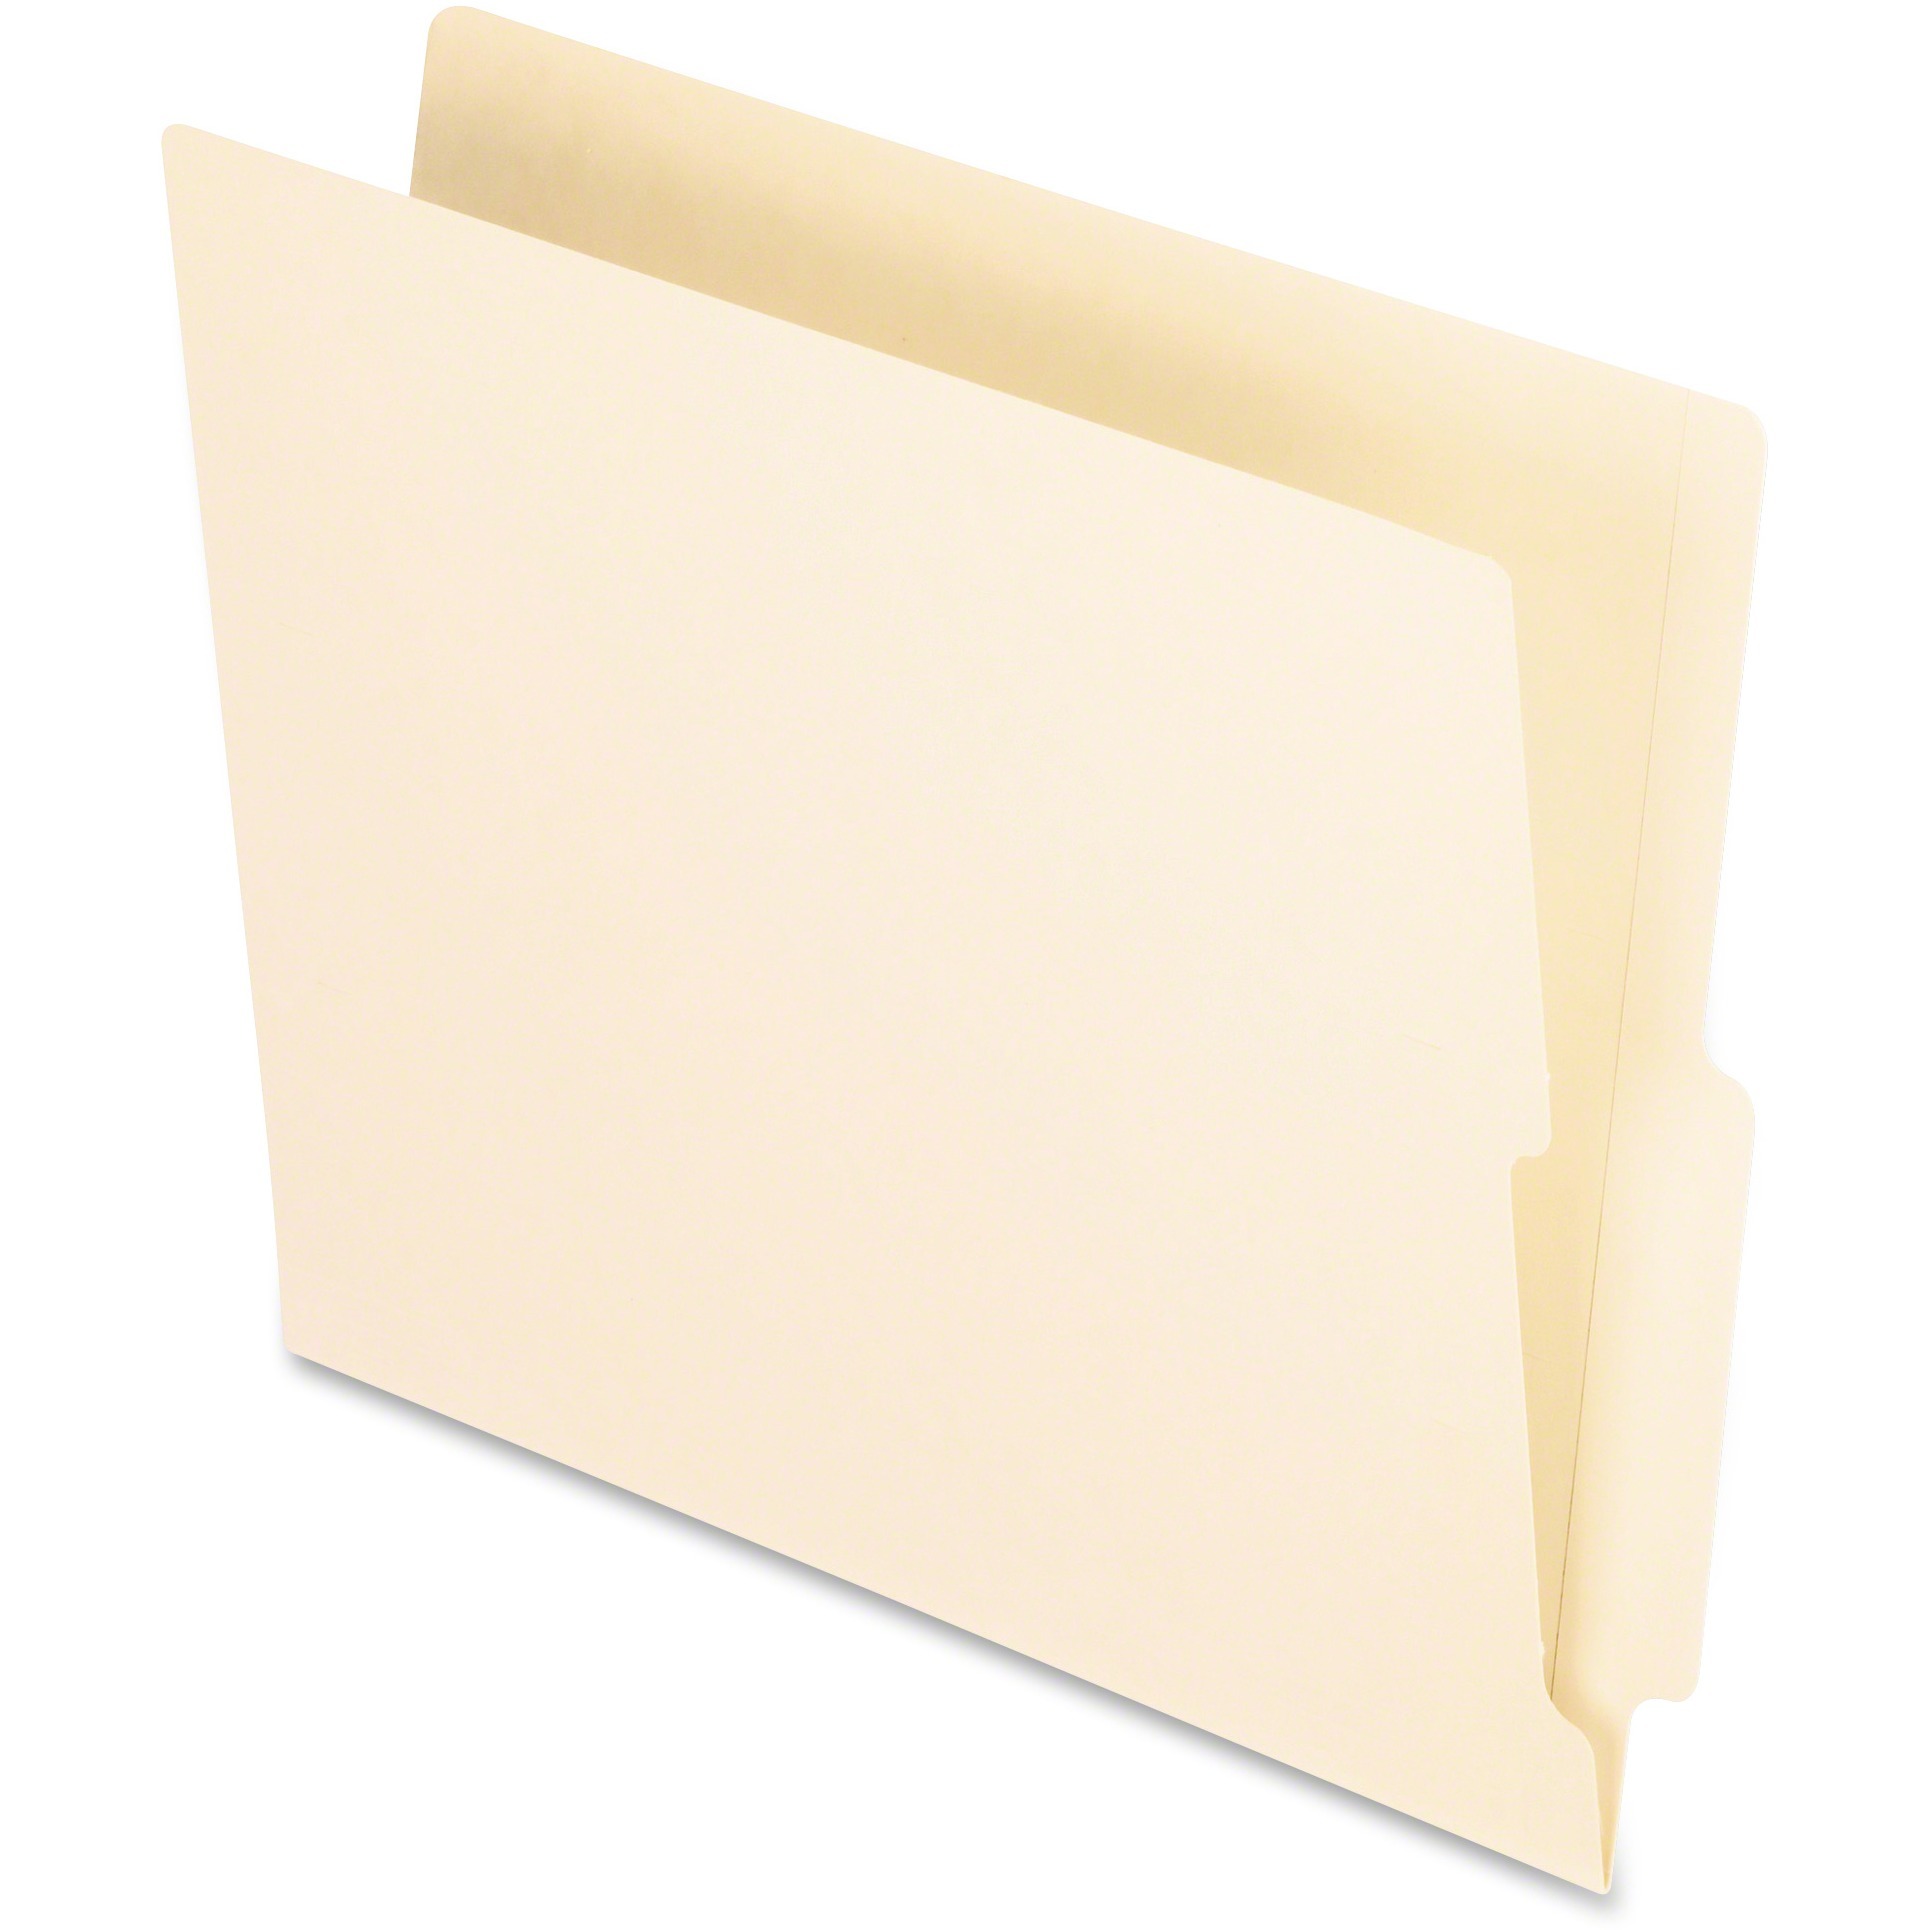 End Tab Folders, Straight Cut Tab, Two Ply, Letter, Manila, 100/Box